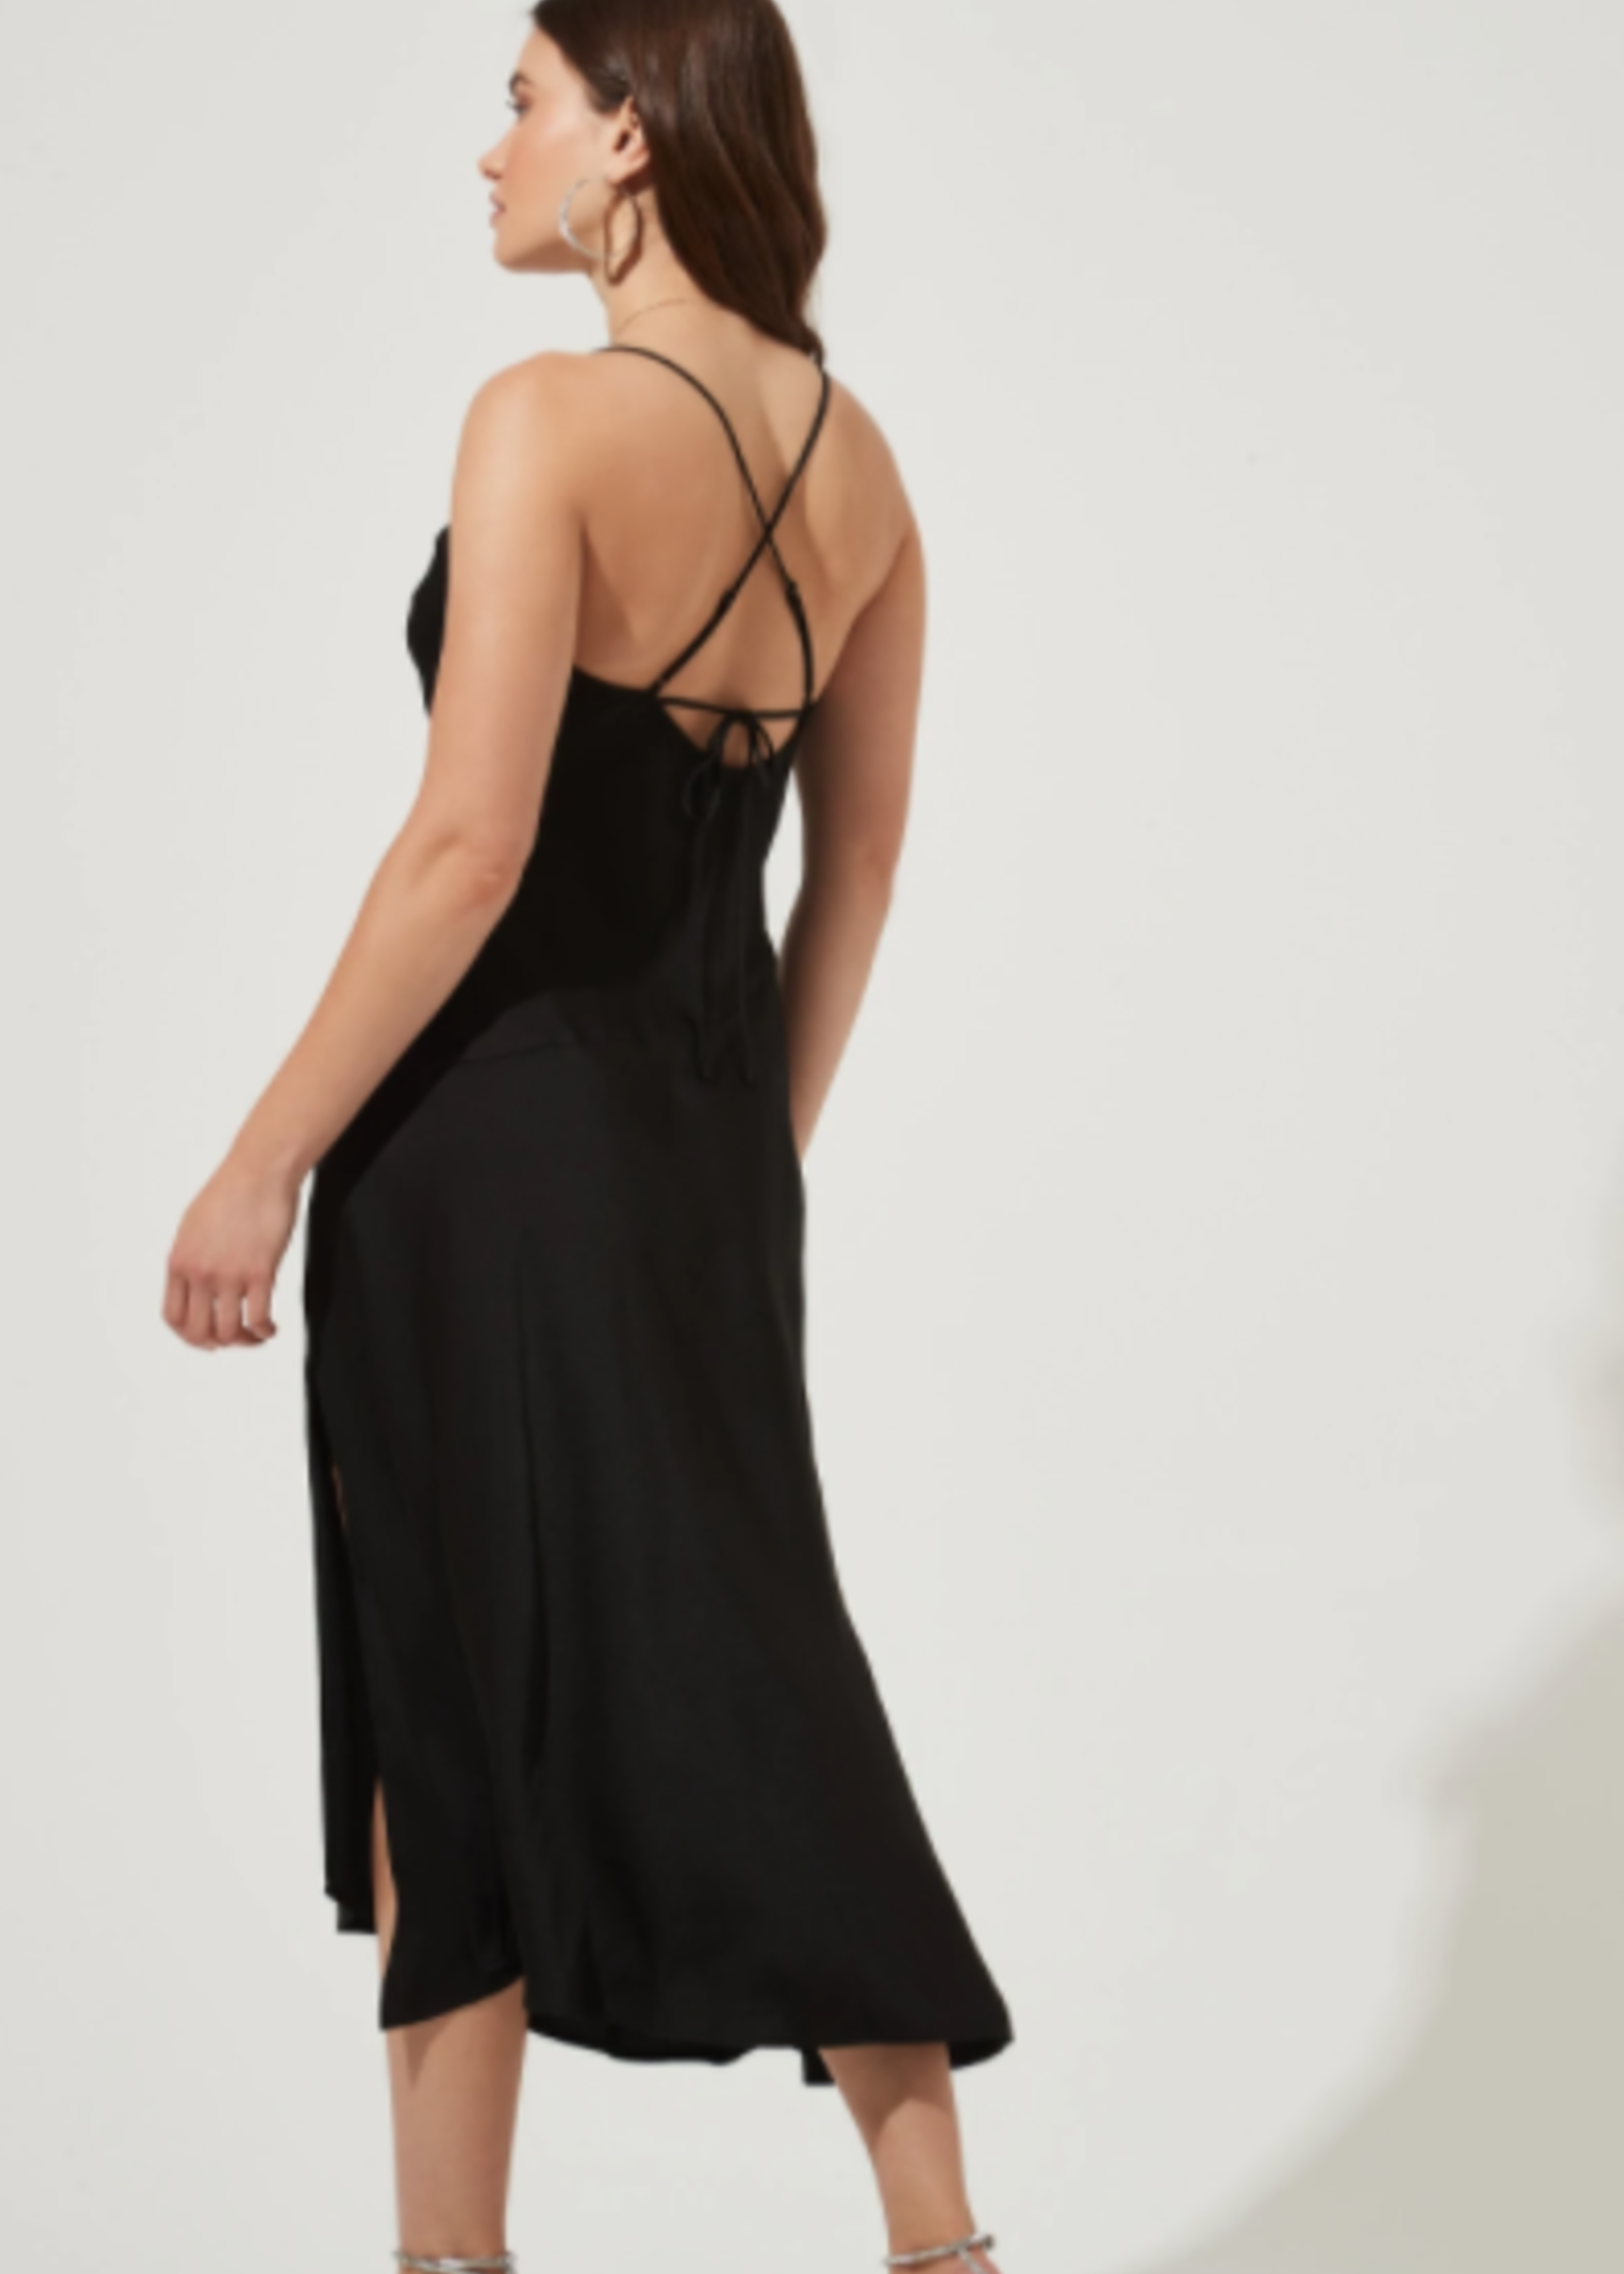 Elitaire Boutique Gaia Dress in Black